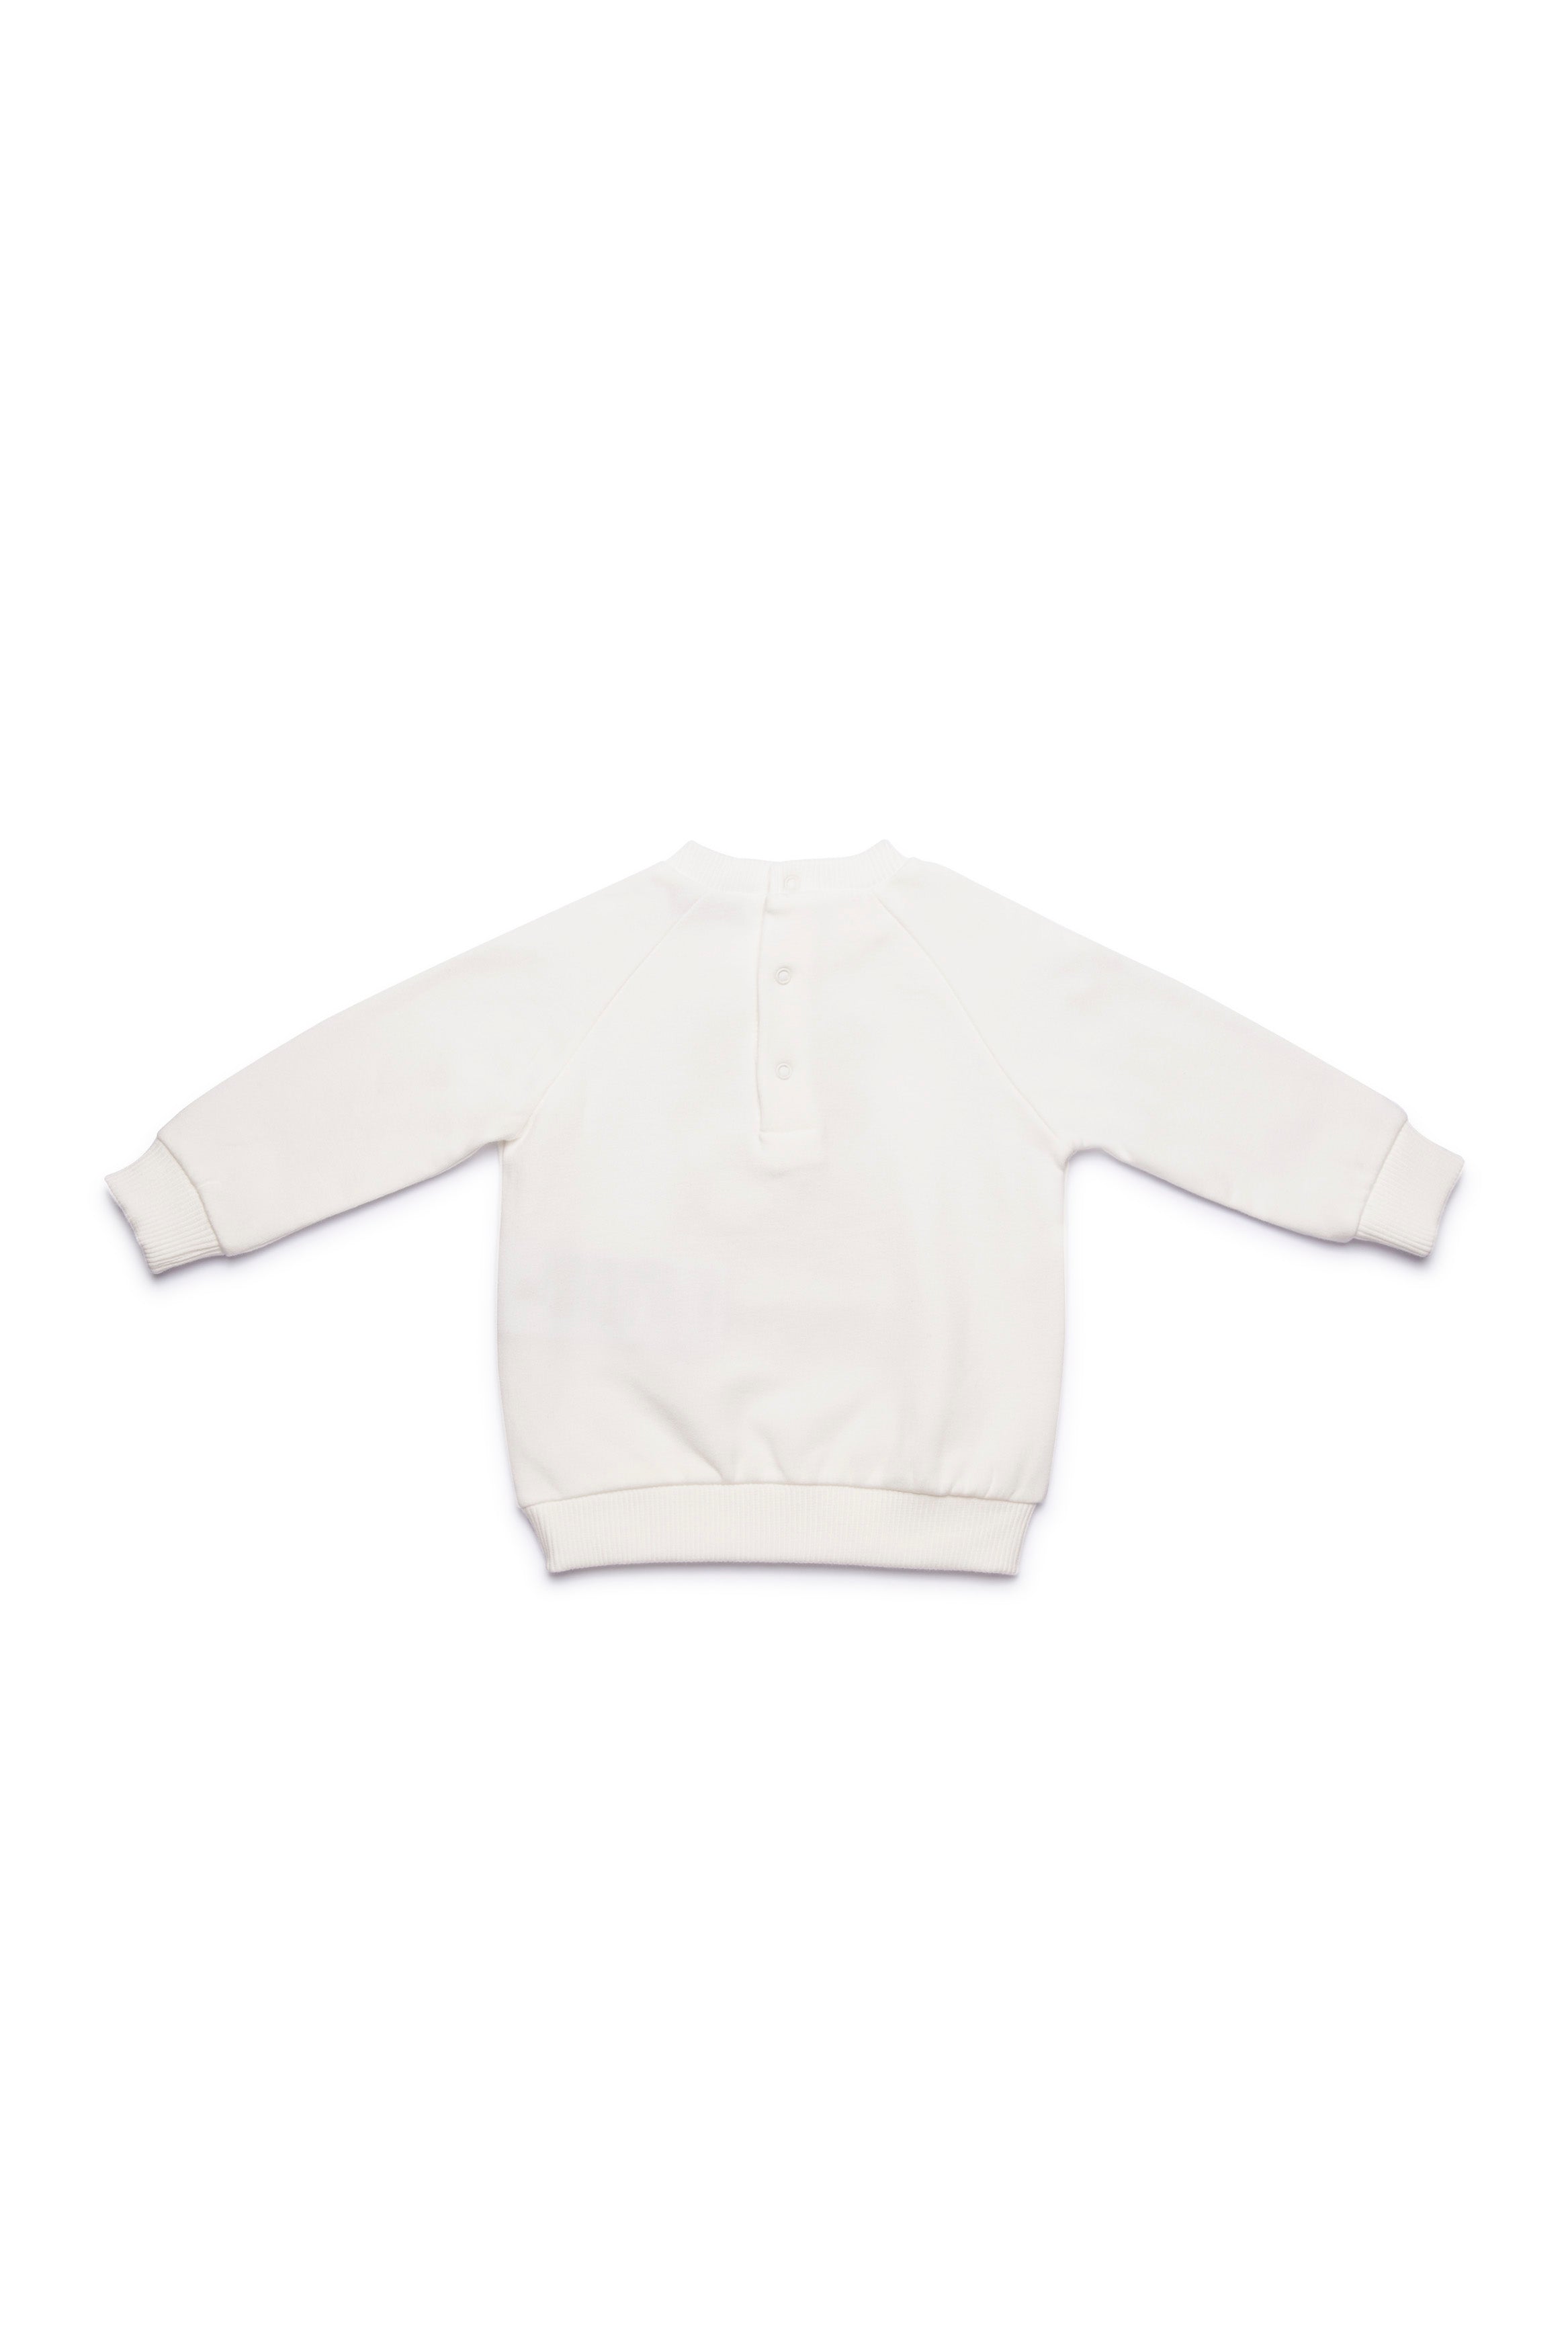 Baby Boys & Girls White Printing Cotton Sweatshirt